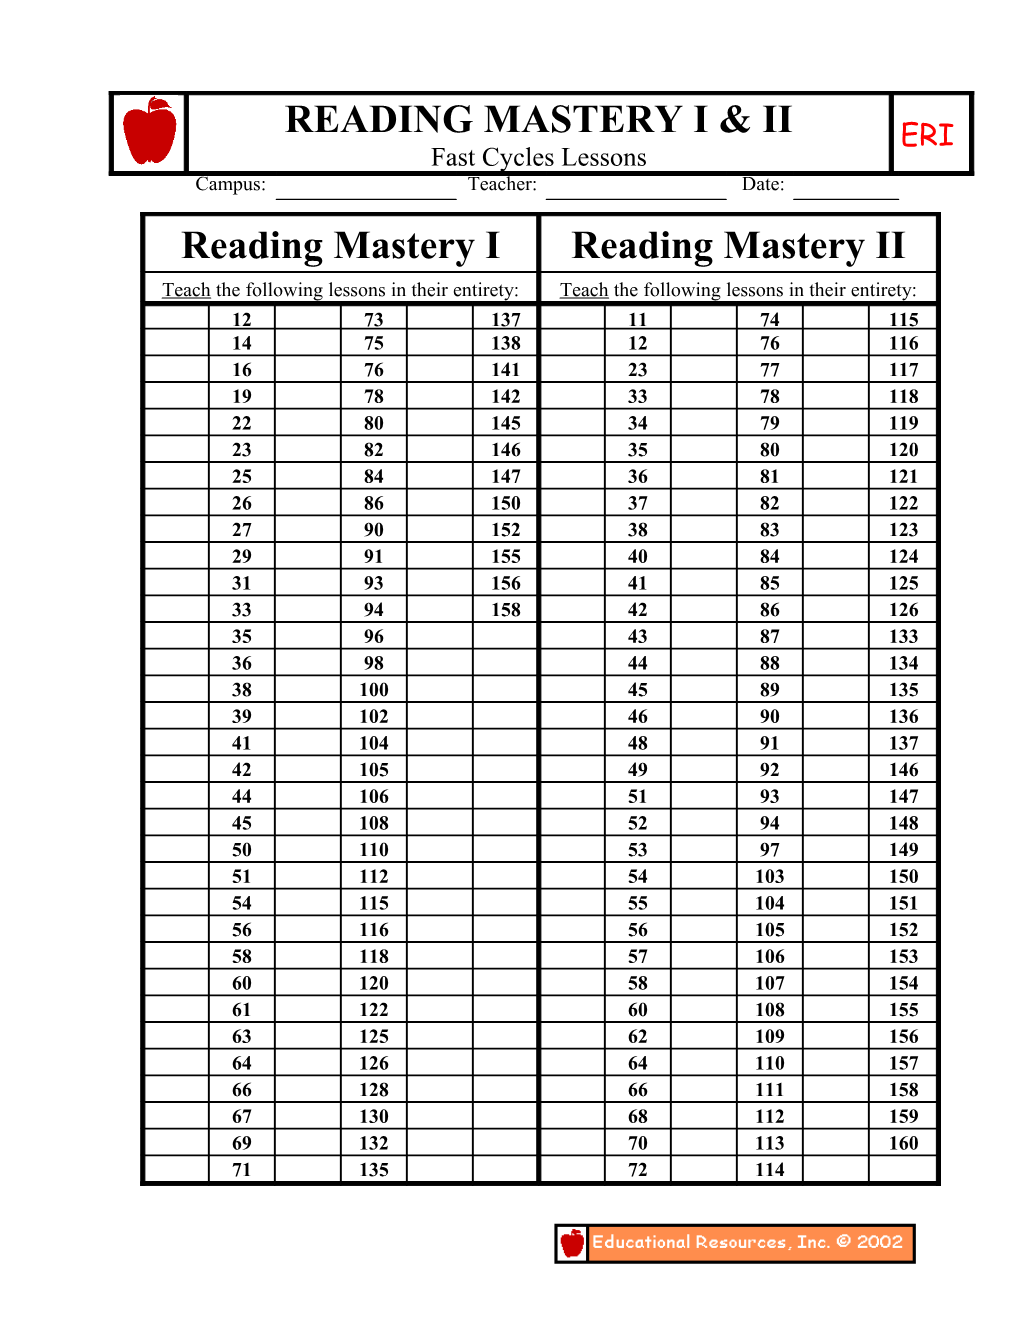 Reading Mastery II